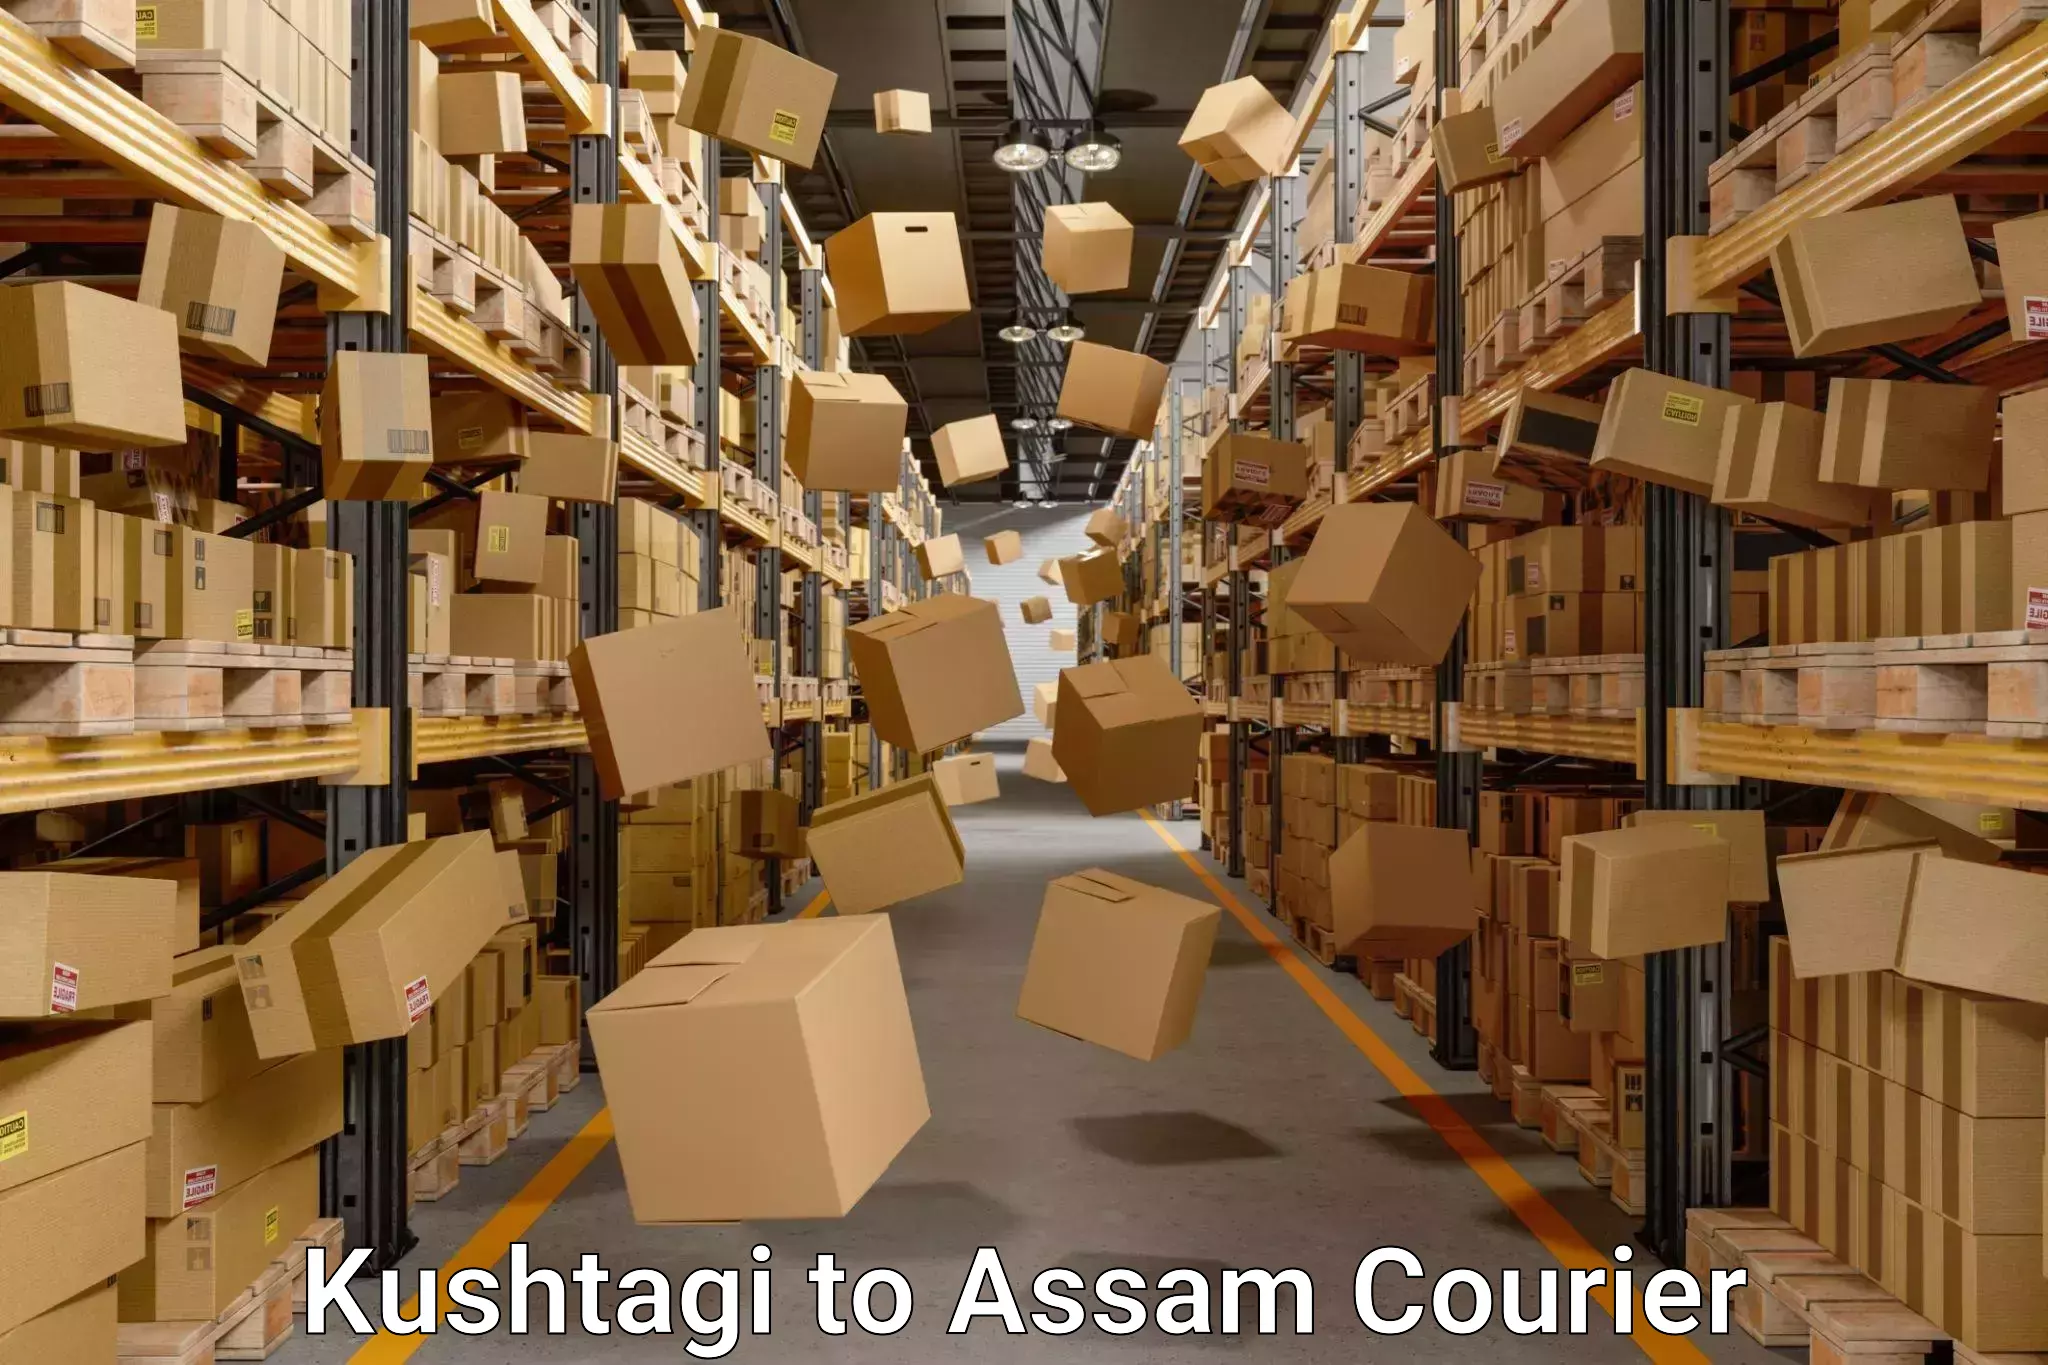 Household moving and storage Kushtagi to Kabuganj